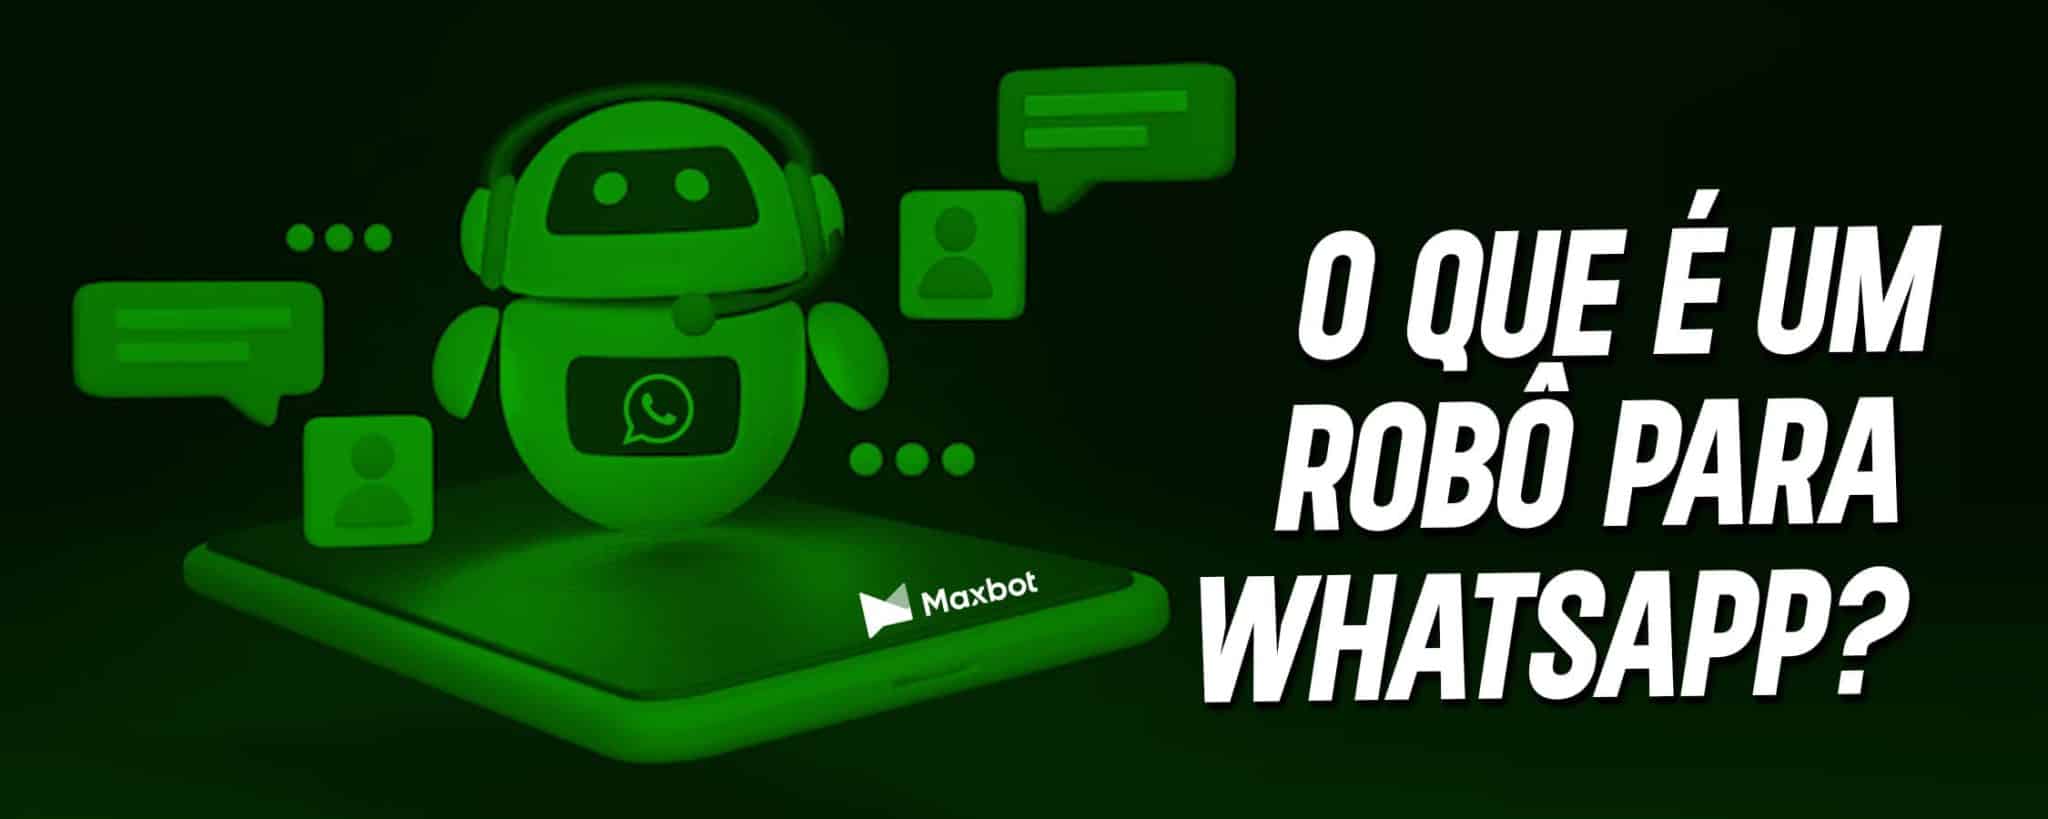 o que é um robô para whatsapp